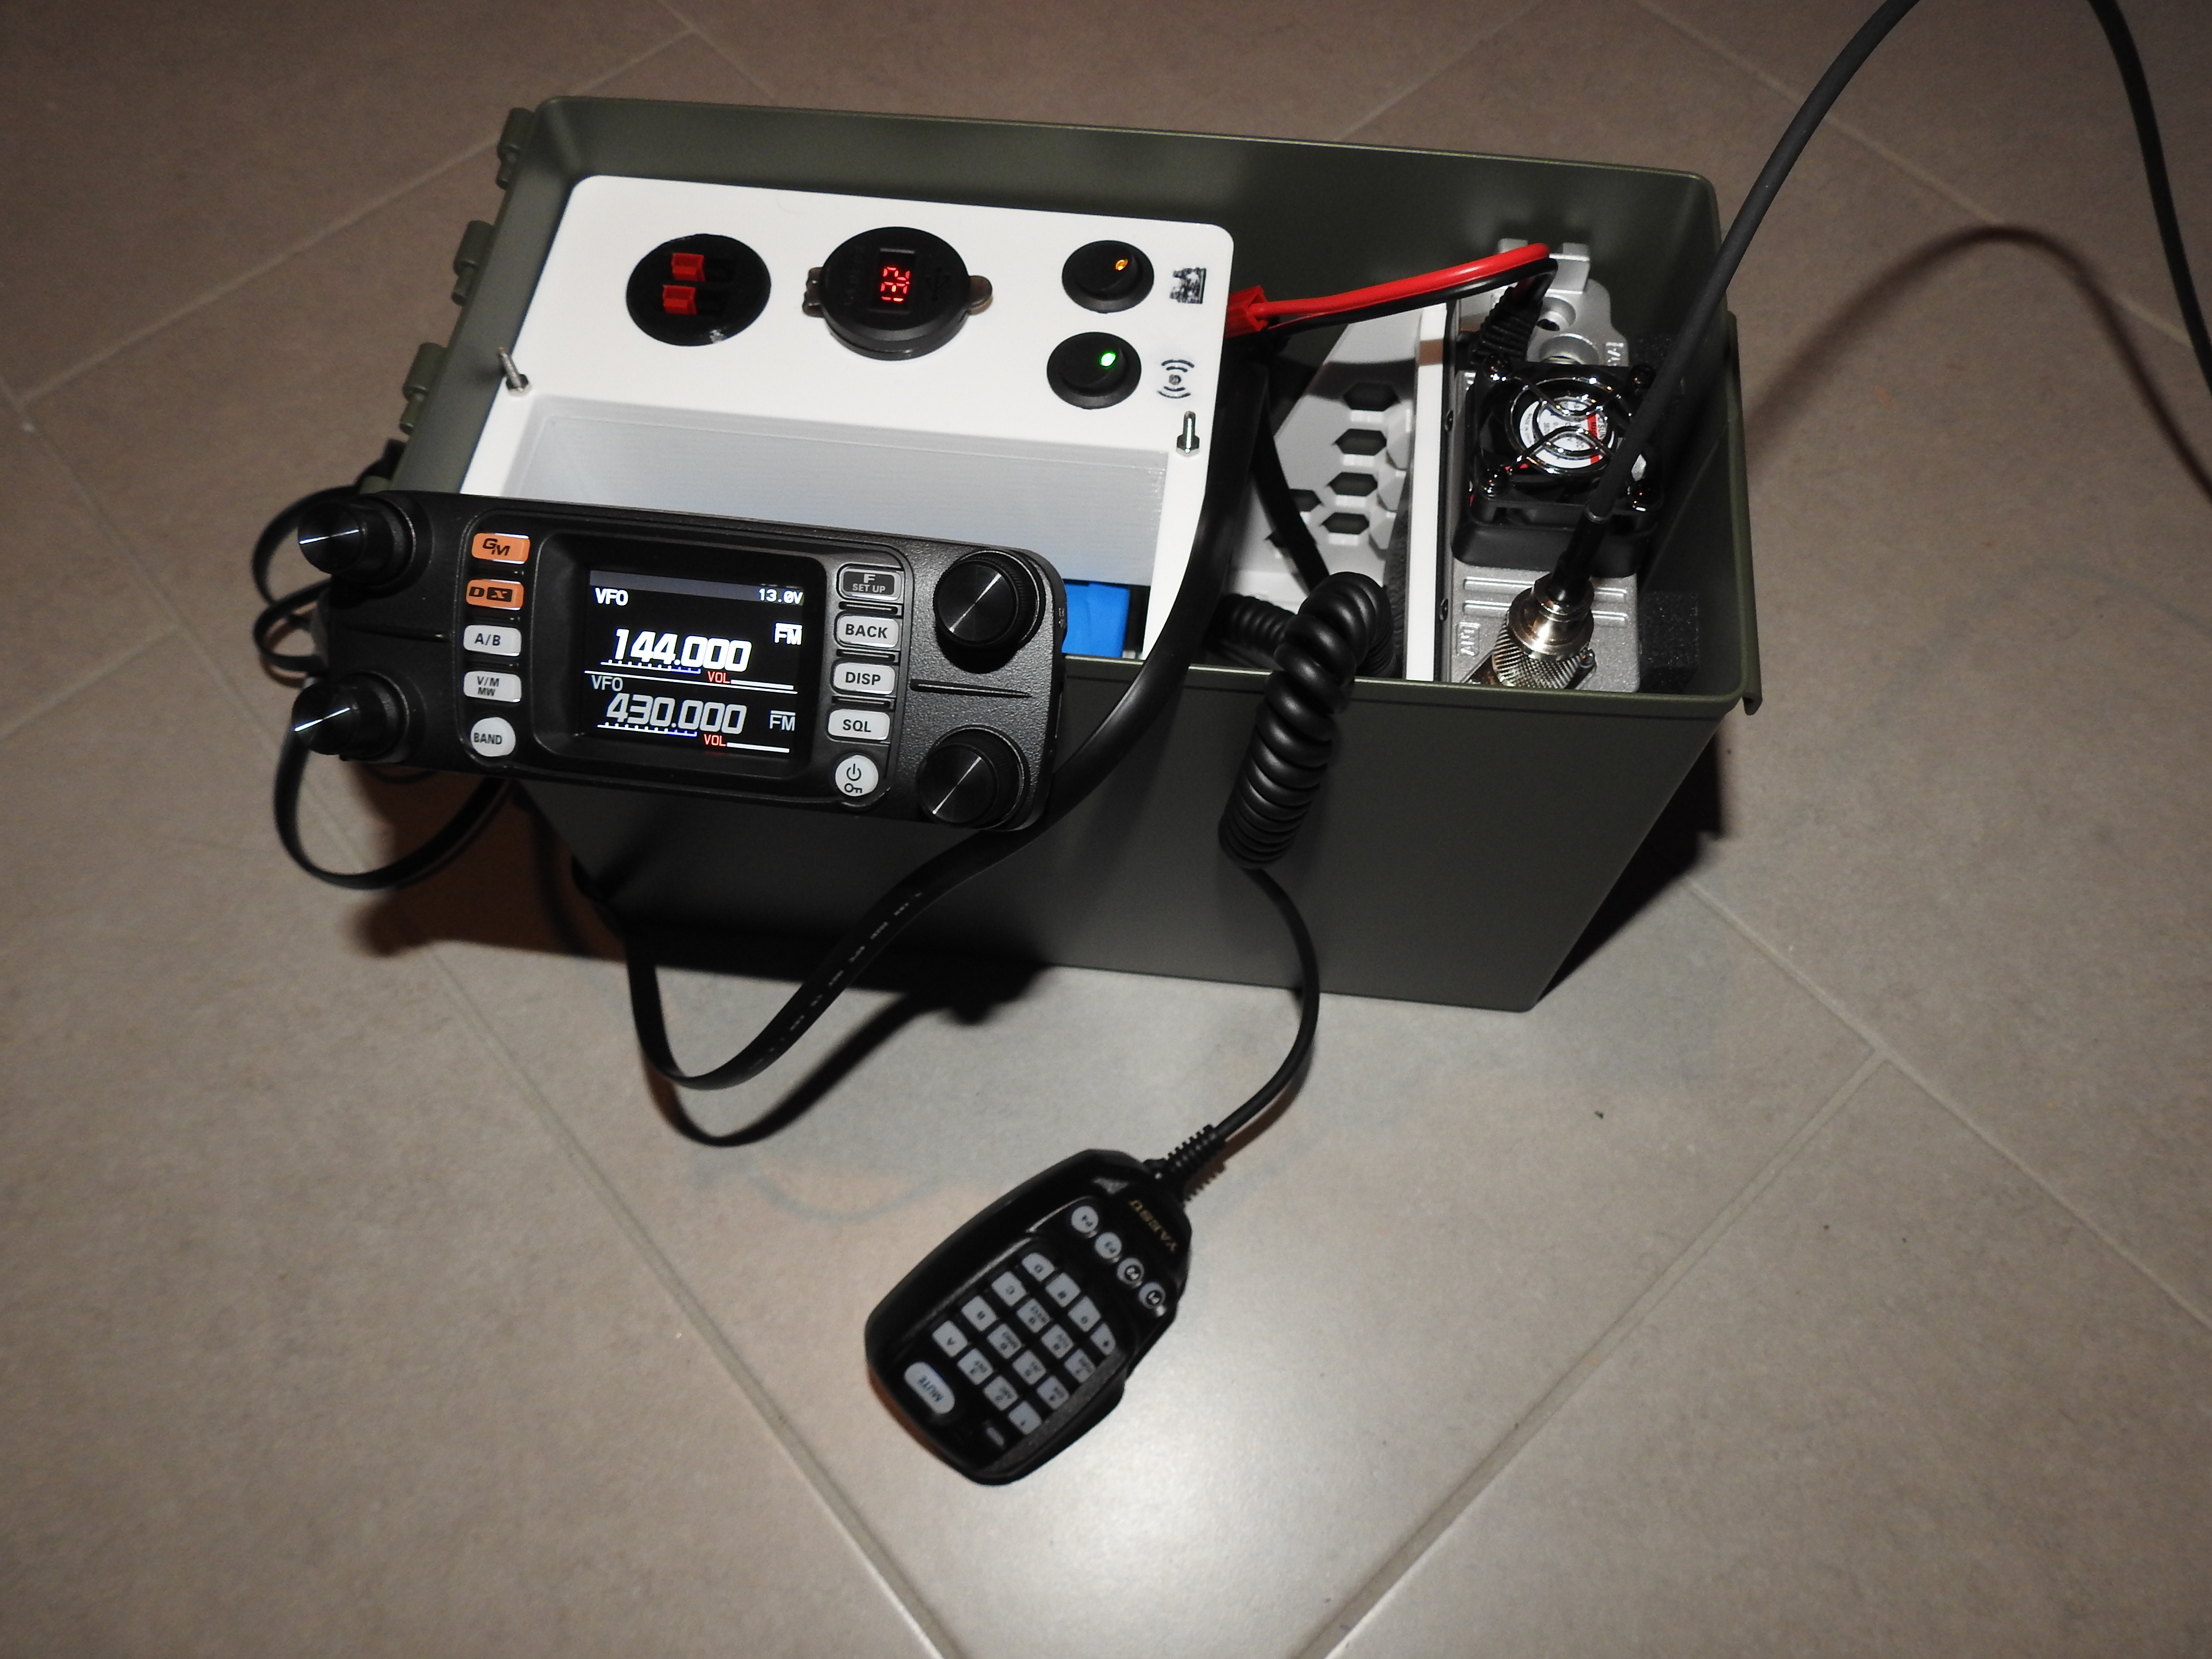 FTM-300 mount for Ham Chest Radio Go Box